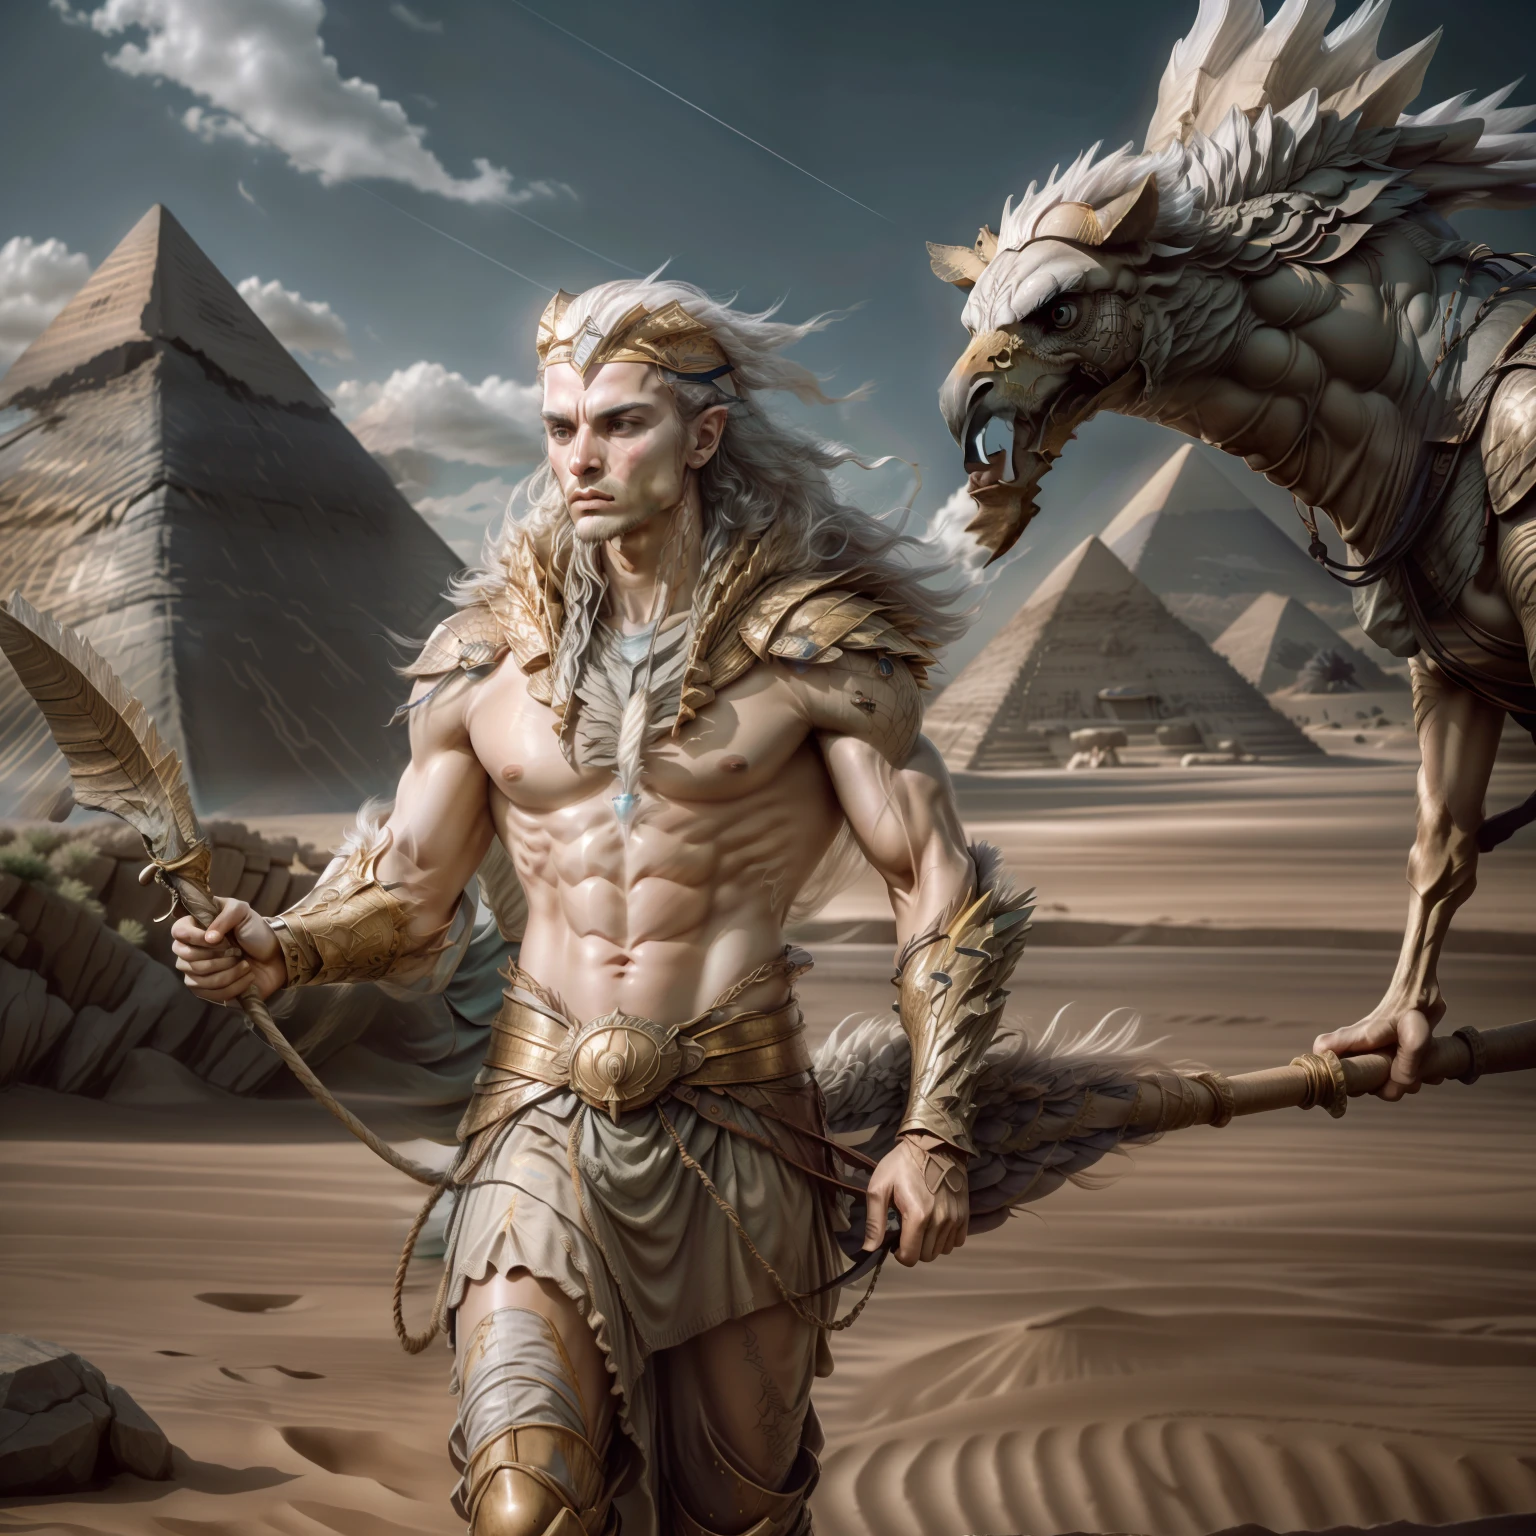 阿蒙, 鷹頭, 強壯的身體, 手上有5個手指, 拿著一根棍子, 18k, 超現實, 埃及情景, 後面有金字塔, 沙漠, 駱駝, 和風, - 汽车